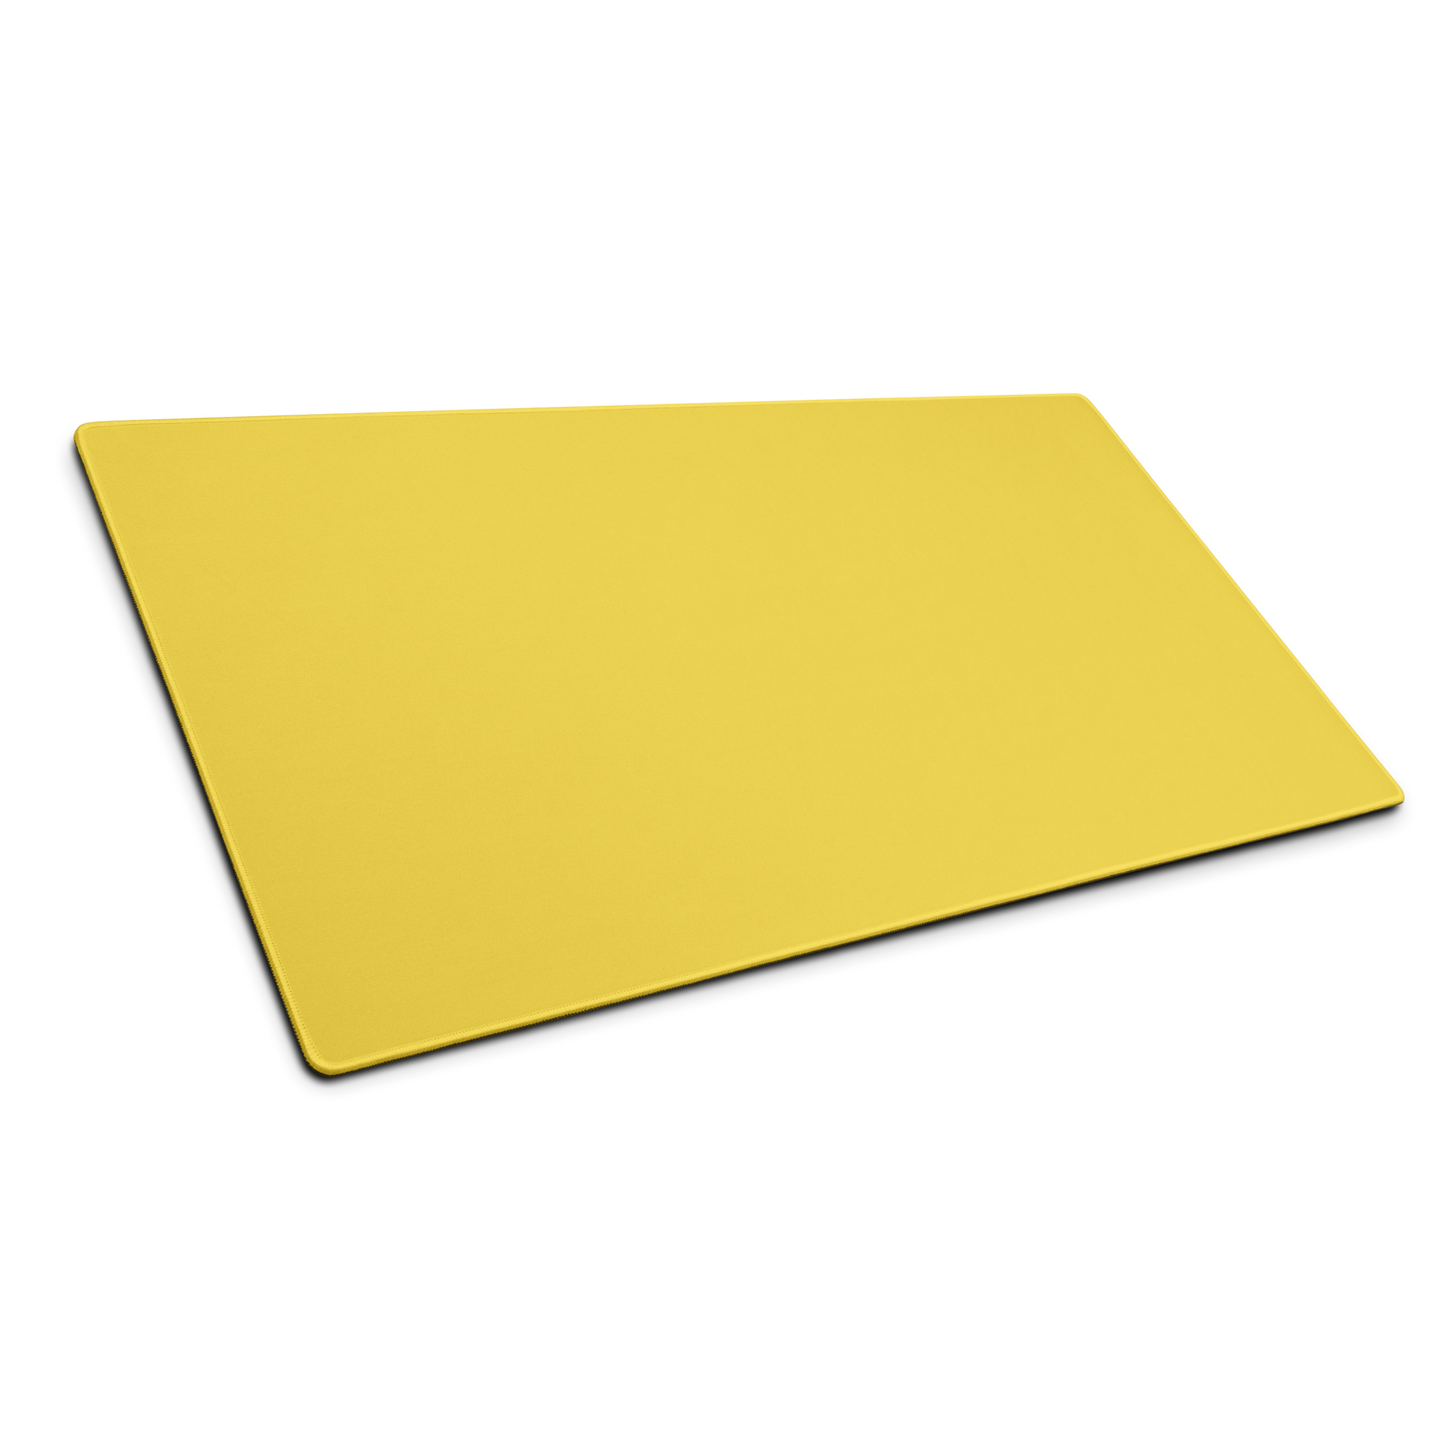 Yellow Desk Pad -  Pantone 113